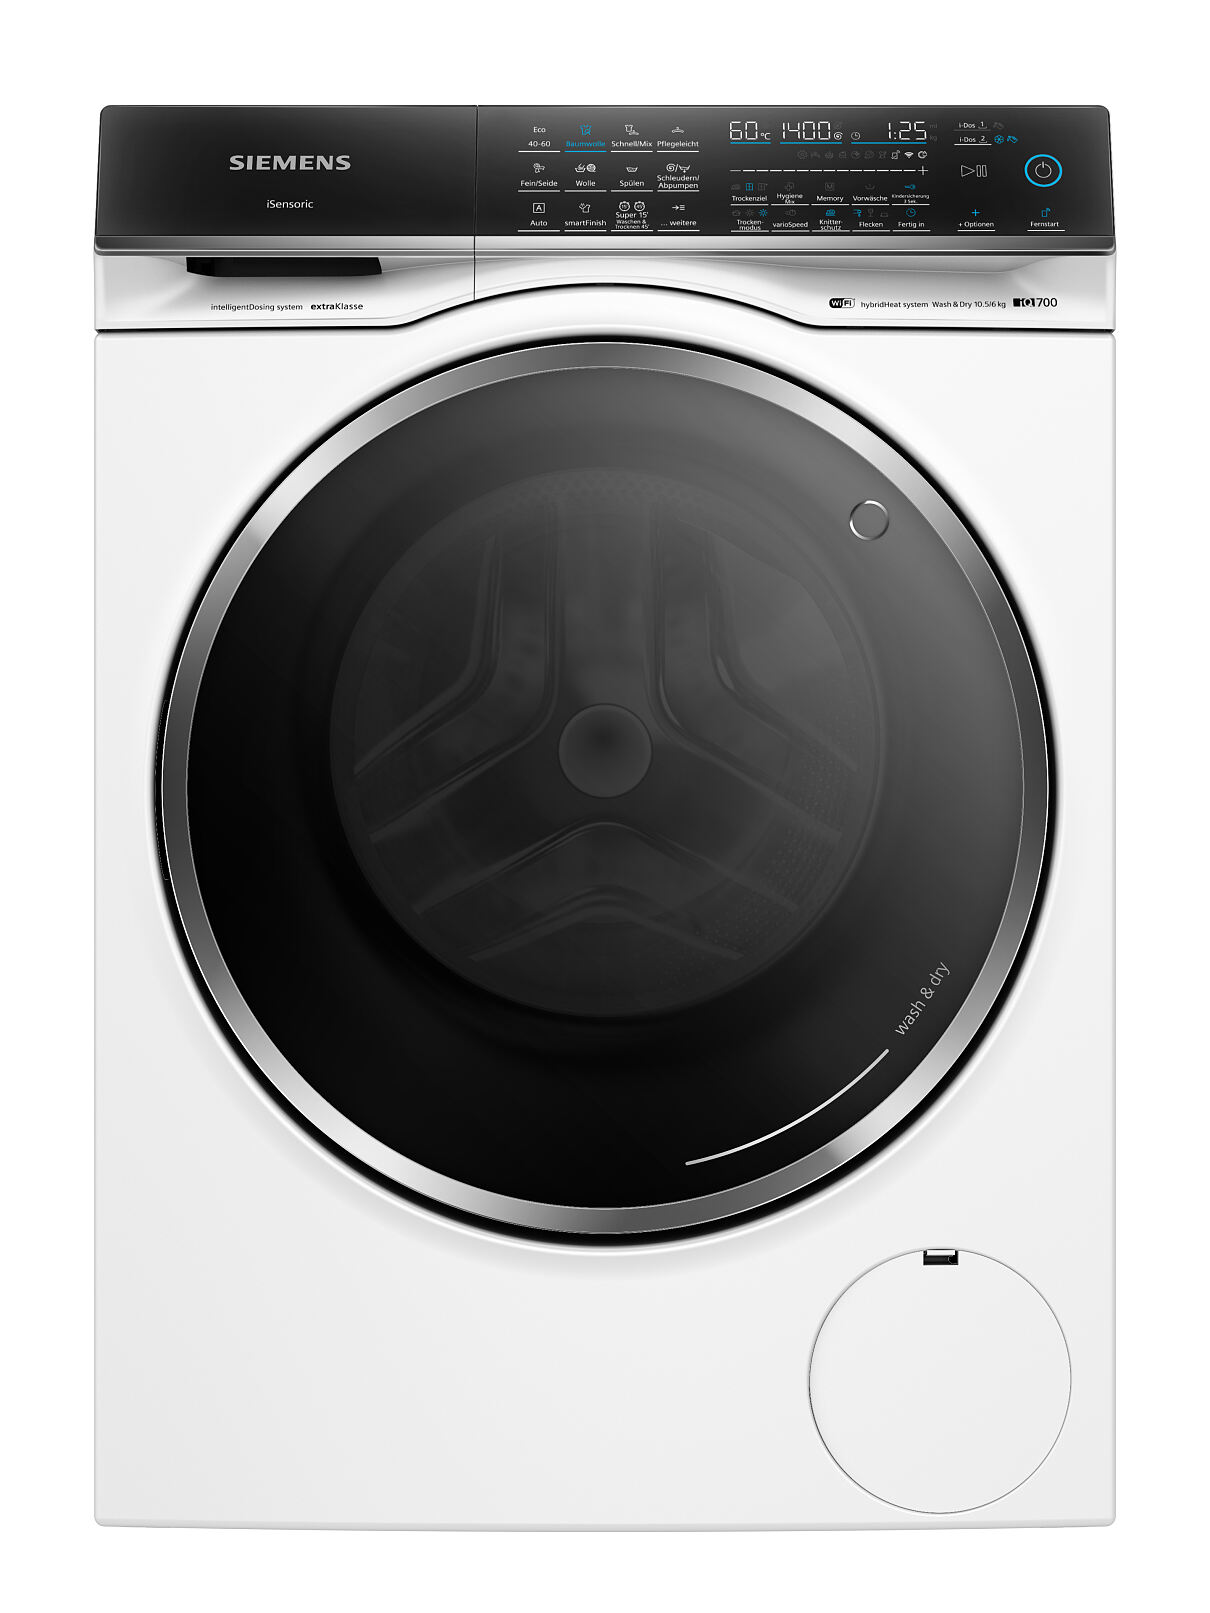 Zeit- und platzsparend Dosieren, Waschen und Trocknen mit nur einem Gerät - die neuen Siemens iQ700 Waschtrockner.